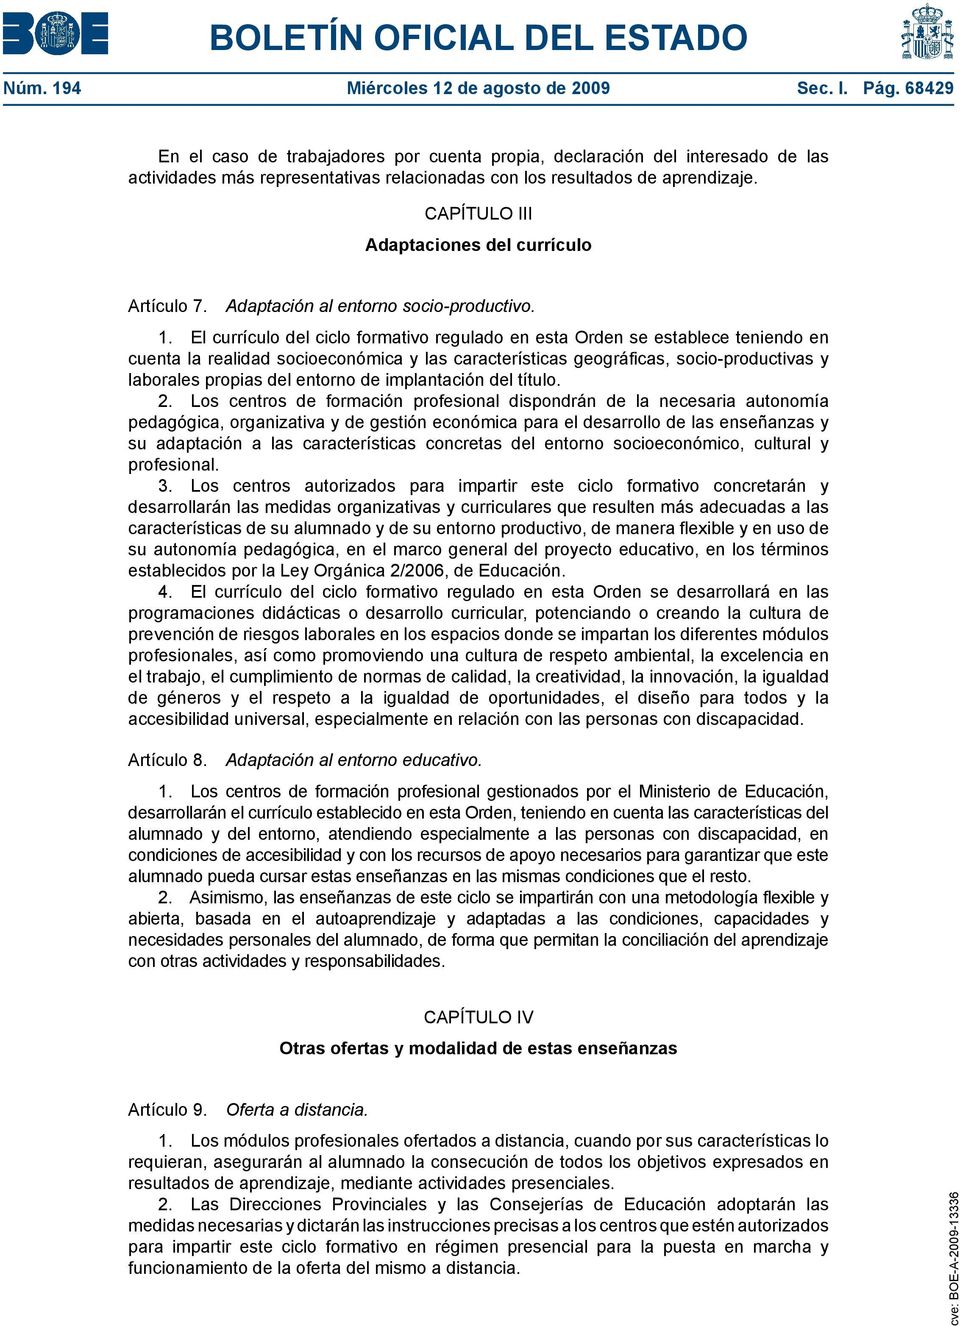 CAPÍTULO III Adaptaciones del currículo Artículo 7. Adaptación al entorno socio-productivo. 1.